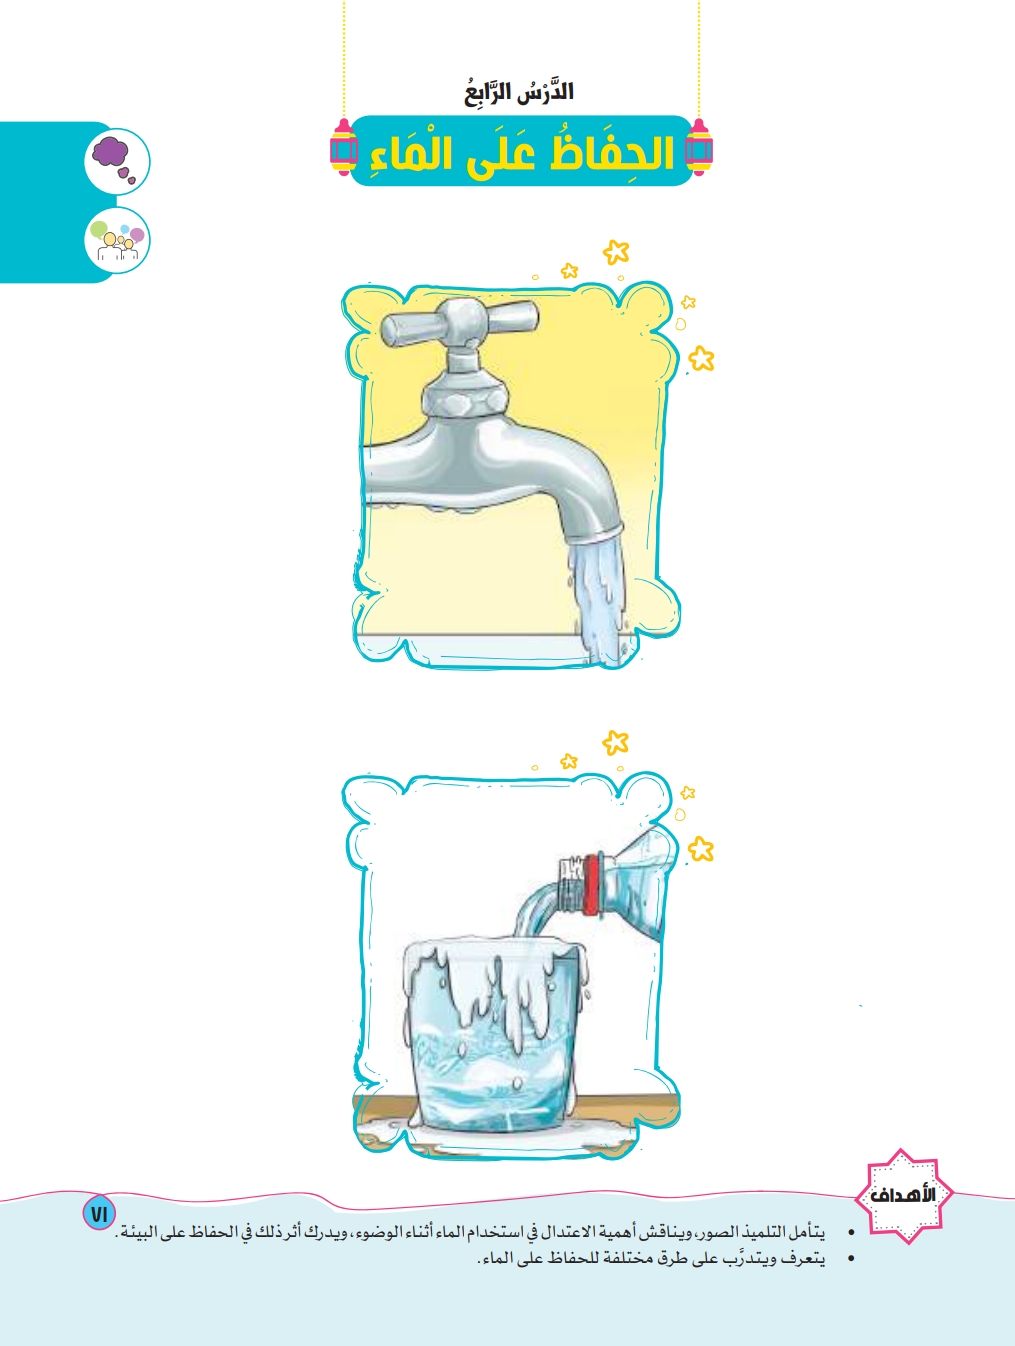 الدرس الرابع: الحفاظ على الماء